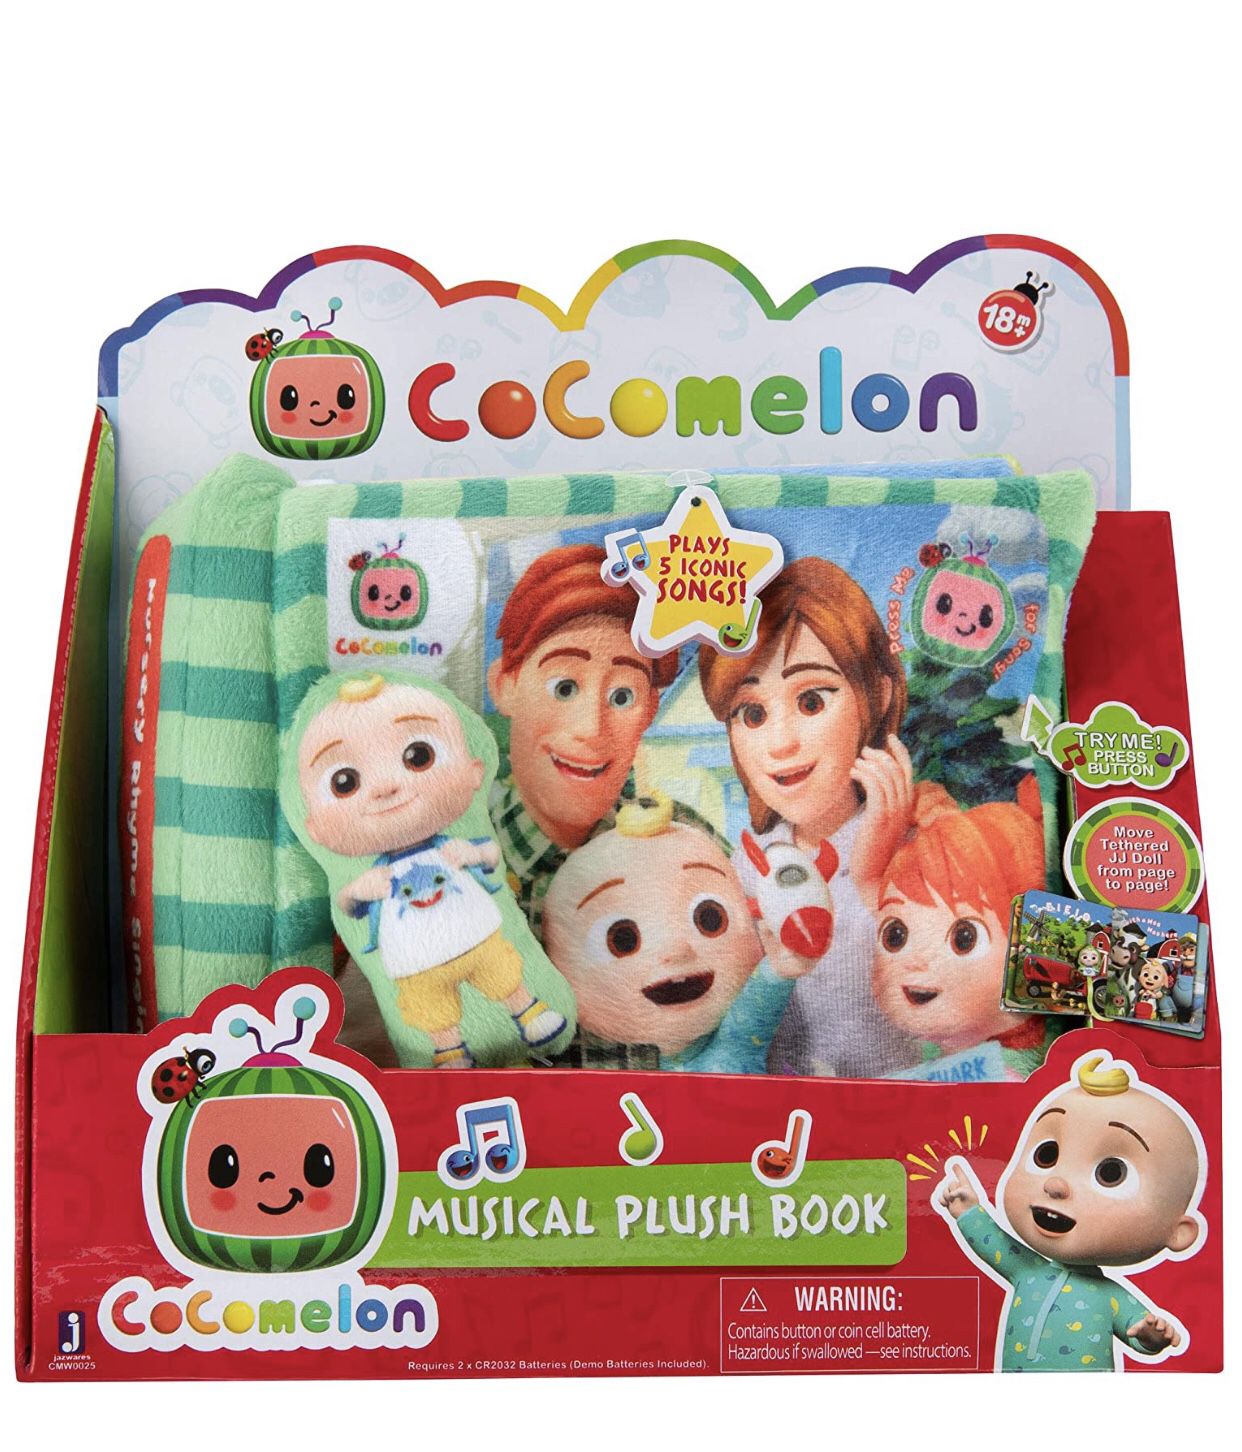 Cocomelon Plush Book